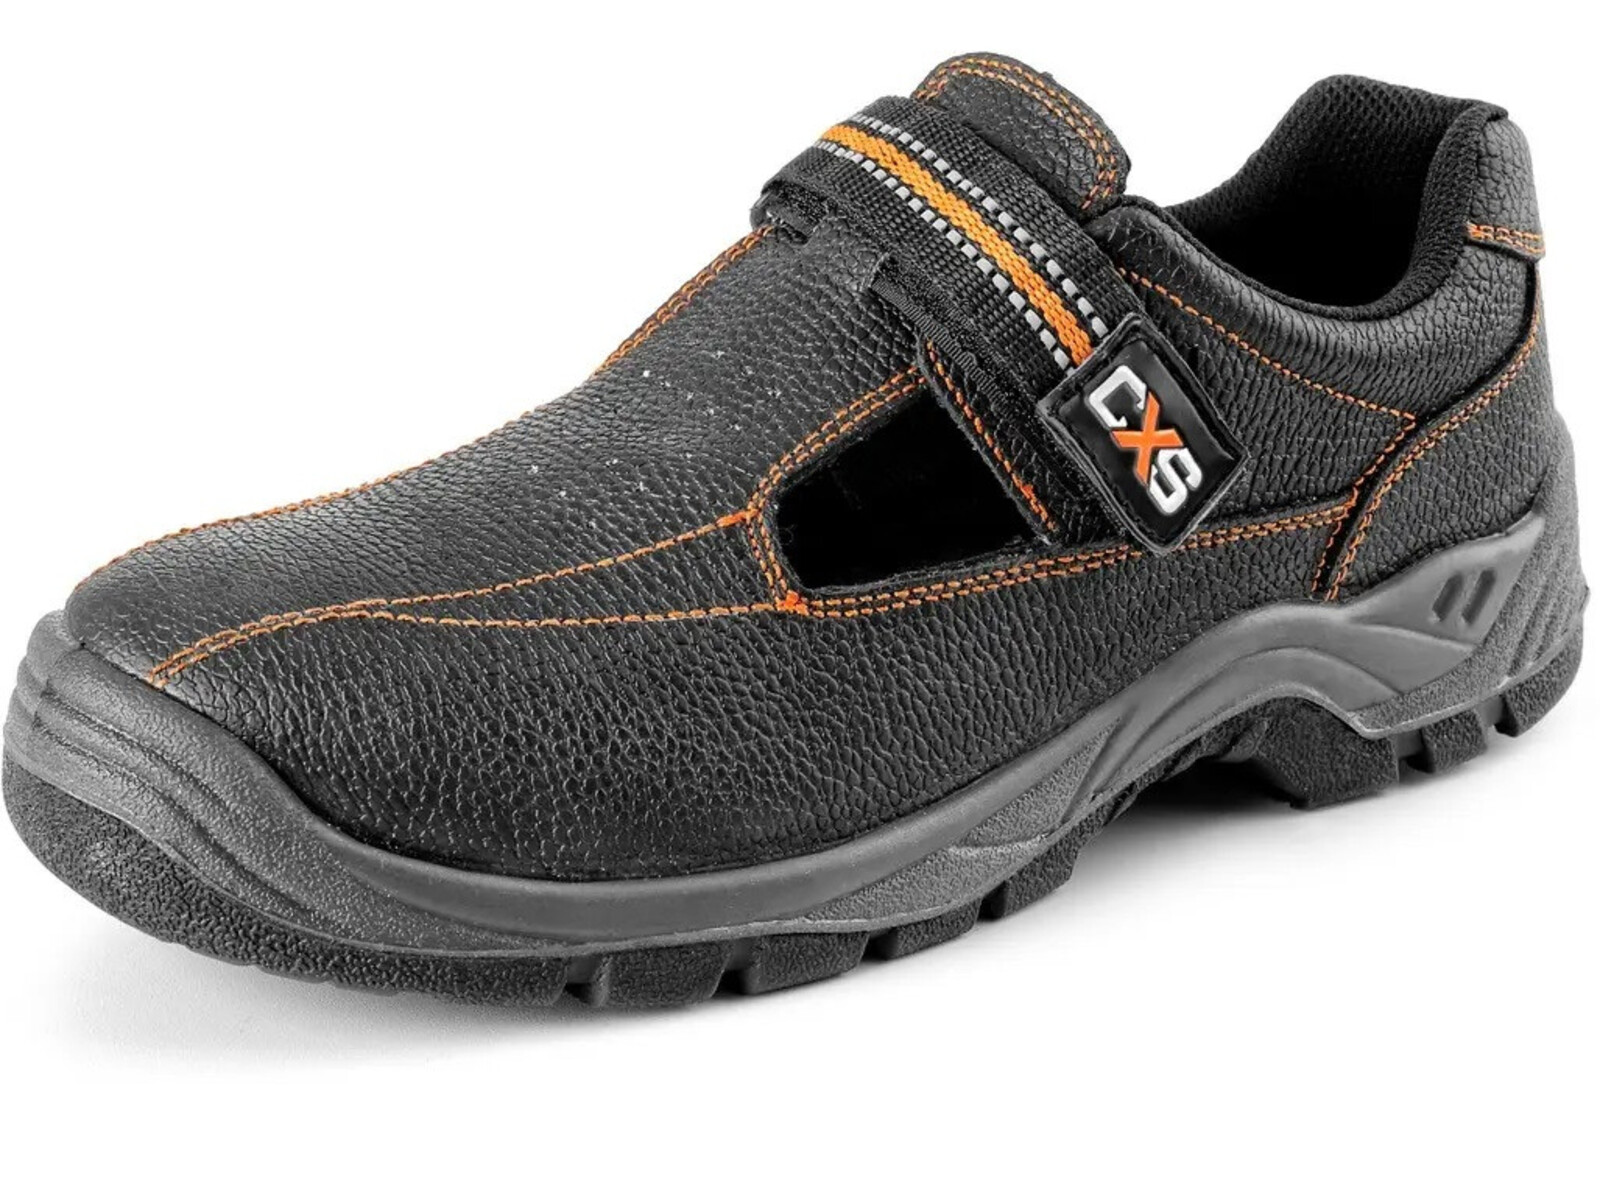 Pracovné sandále CXS Stone Nefrit O1 FO SRC - veľkosť: 45, farba: čierna/oranžová